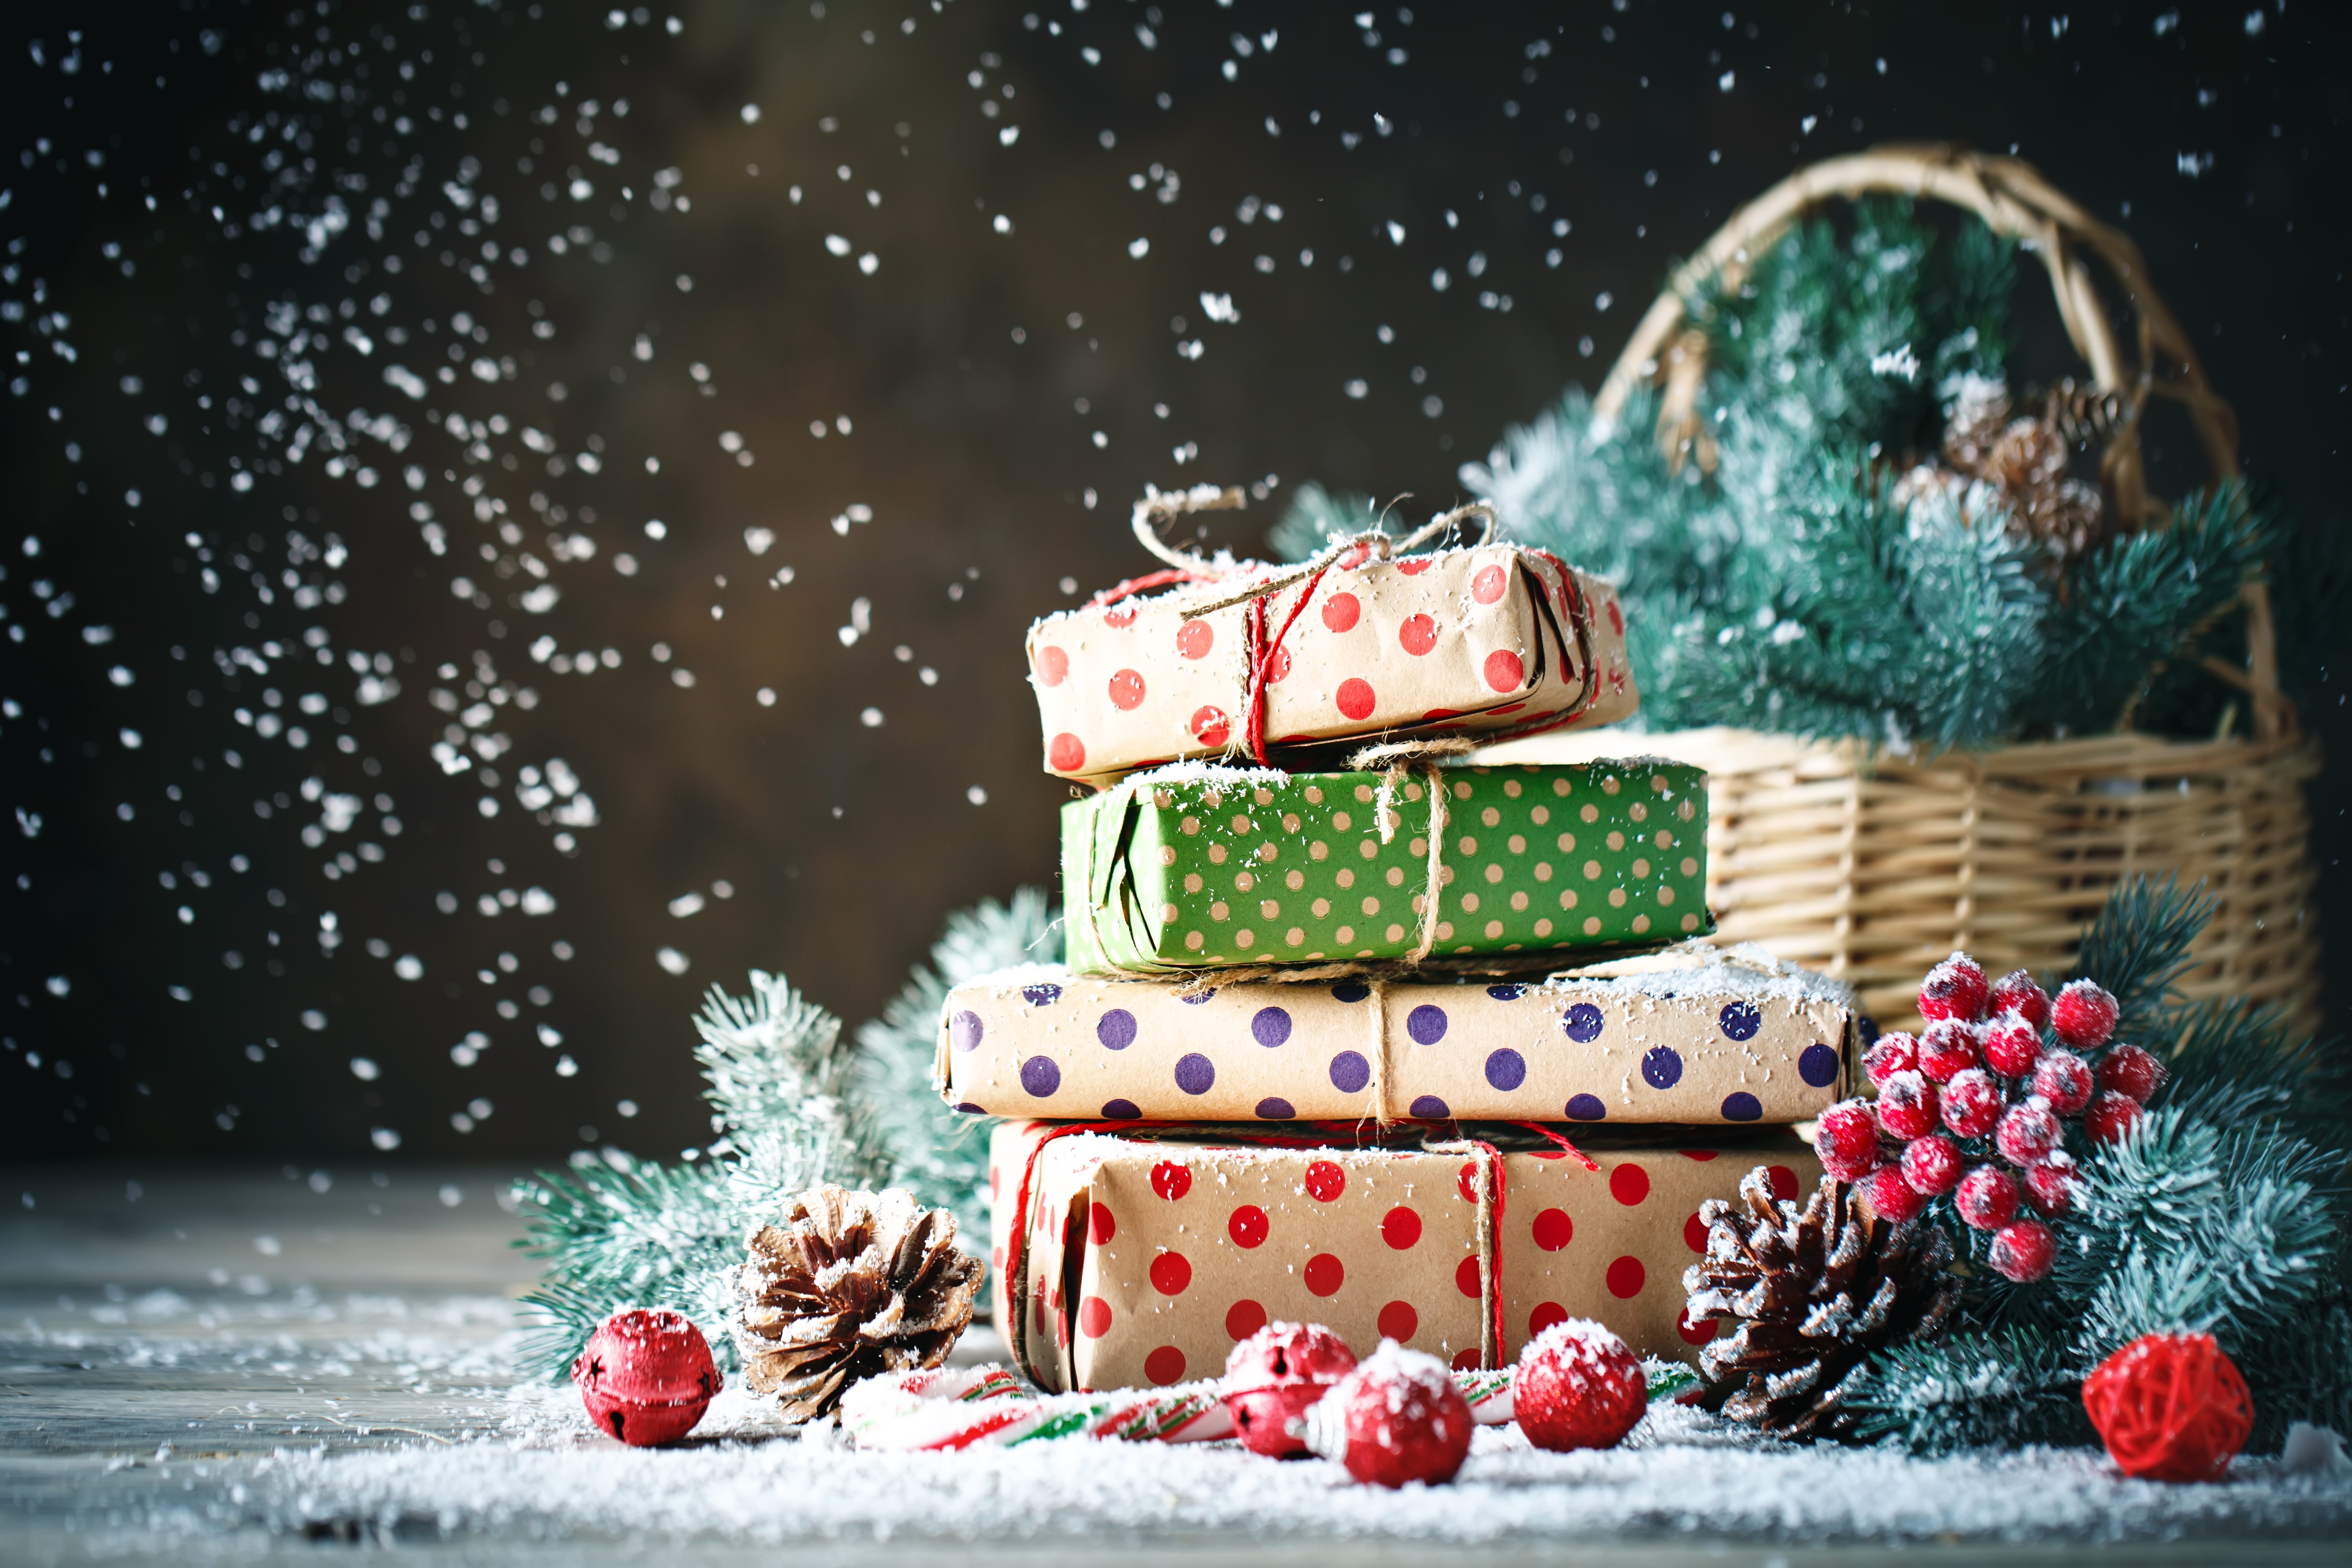 День николая подарки. Снегопад подарков. Подарки на день Святого Николая картинки. Домик, шапка, подарки, новый год, снег. Подарок от Миколая картинки красивые.